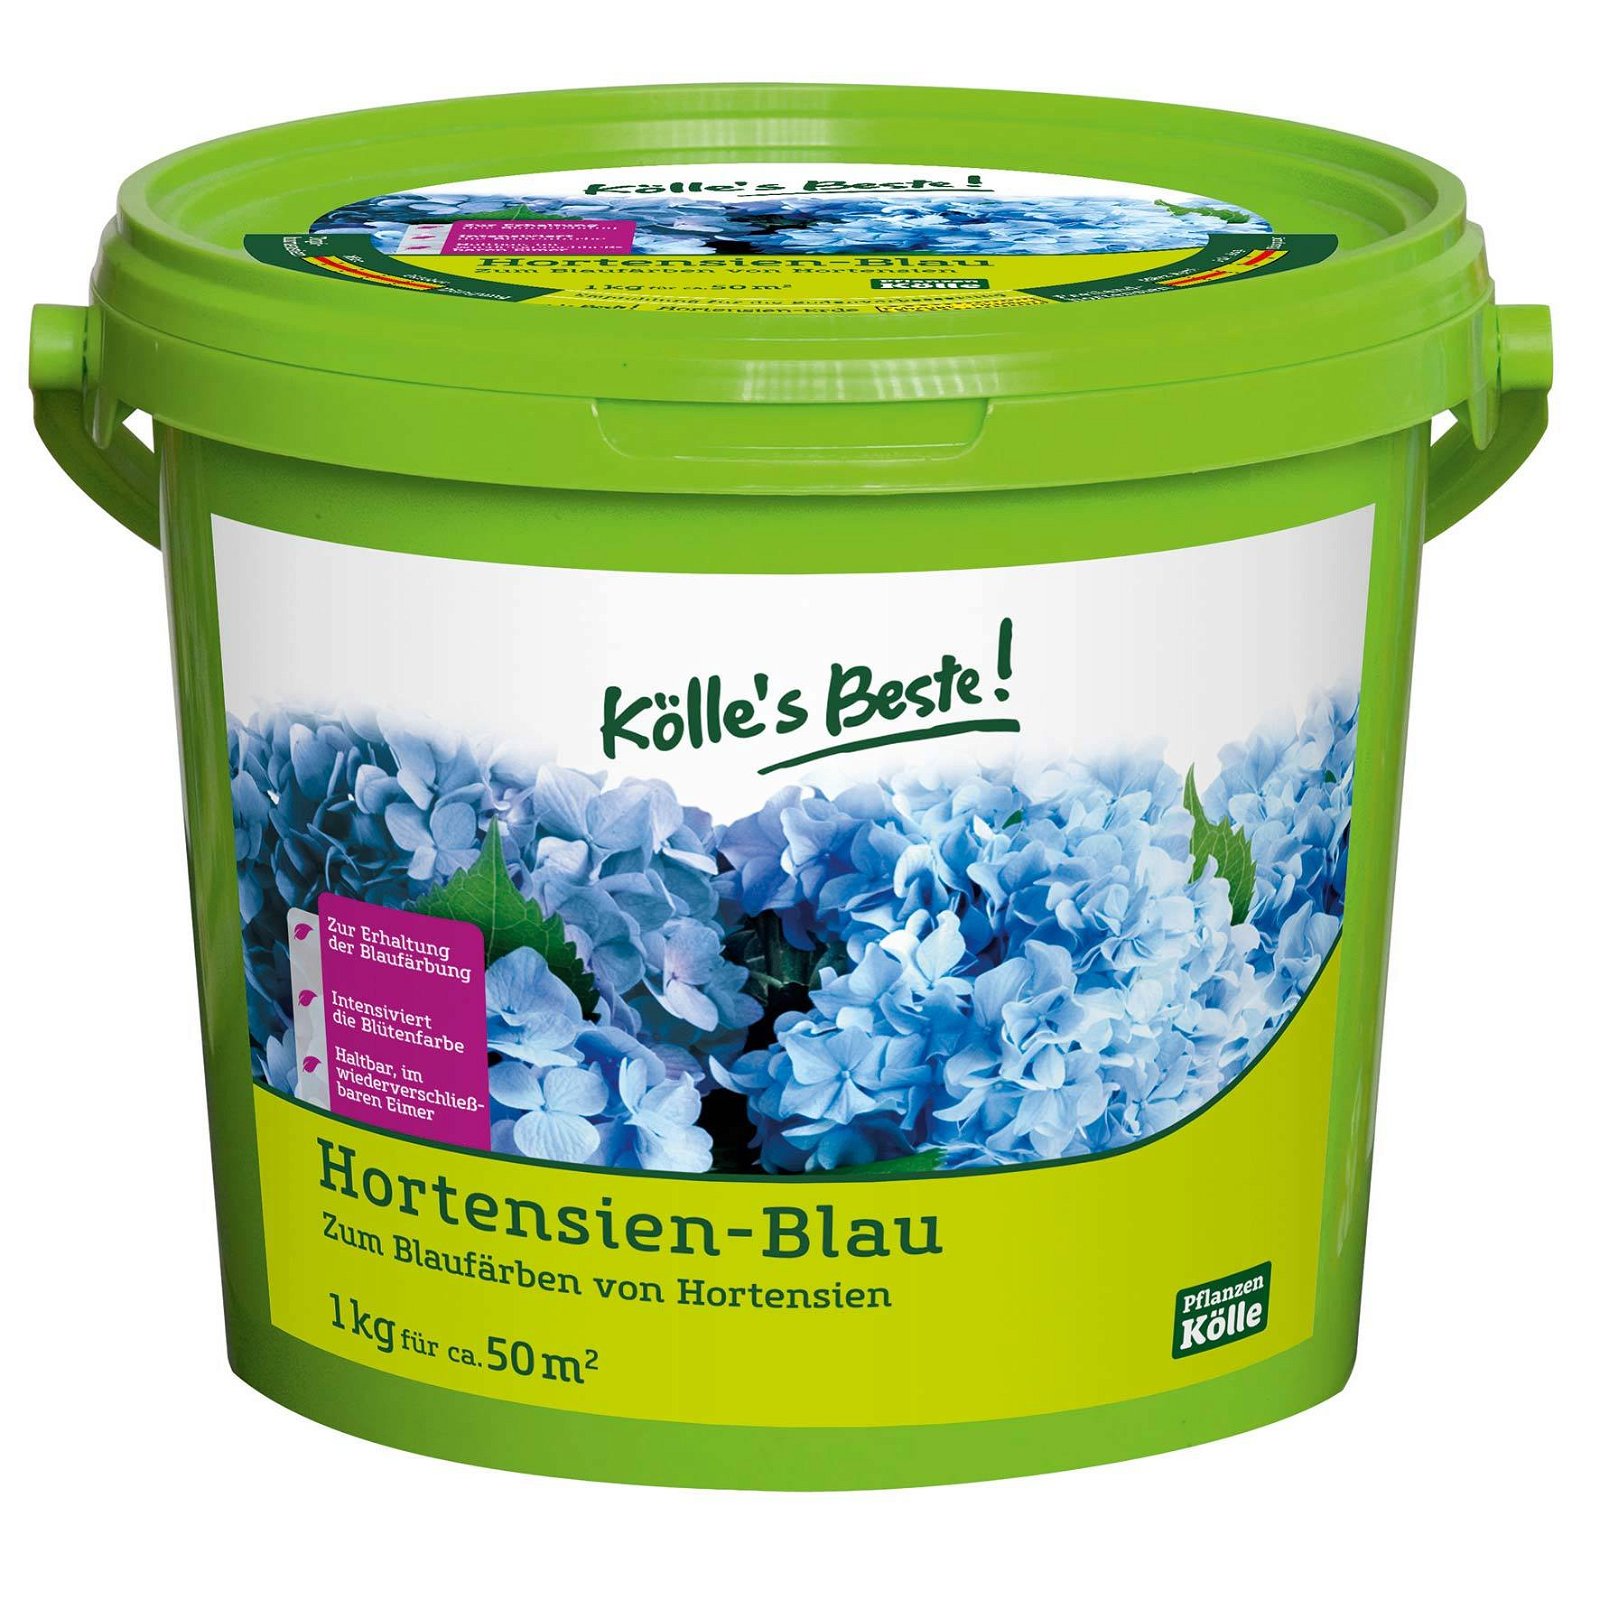 Hortensien-Blau, 1 kg